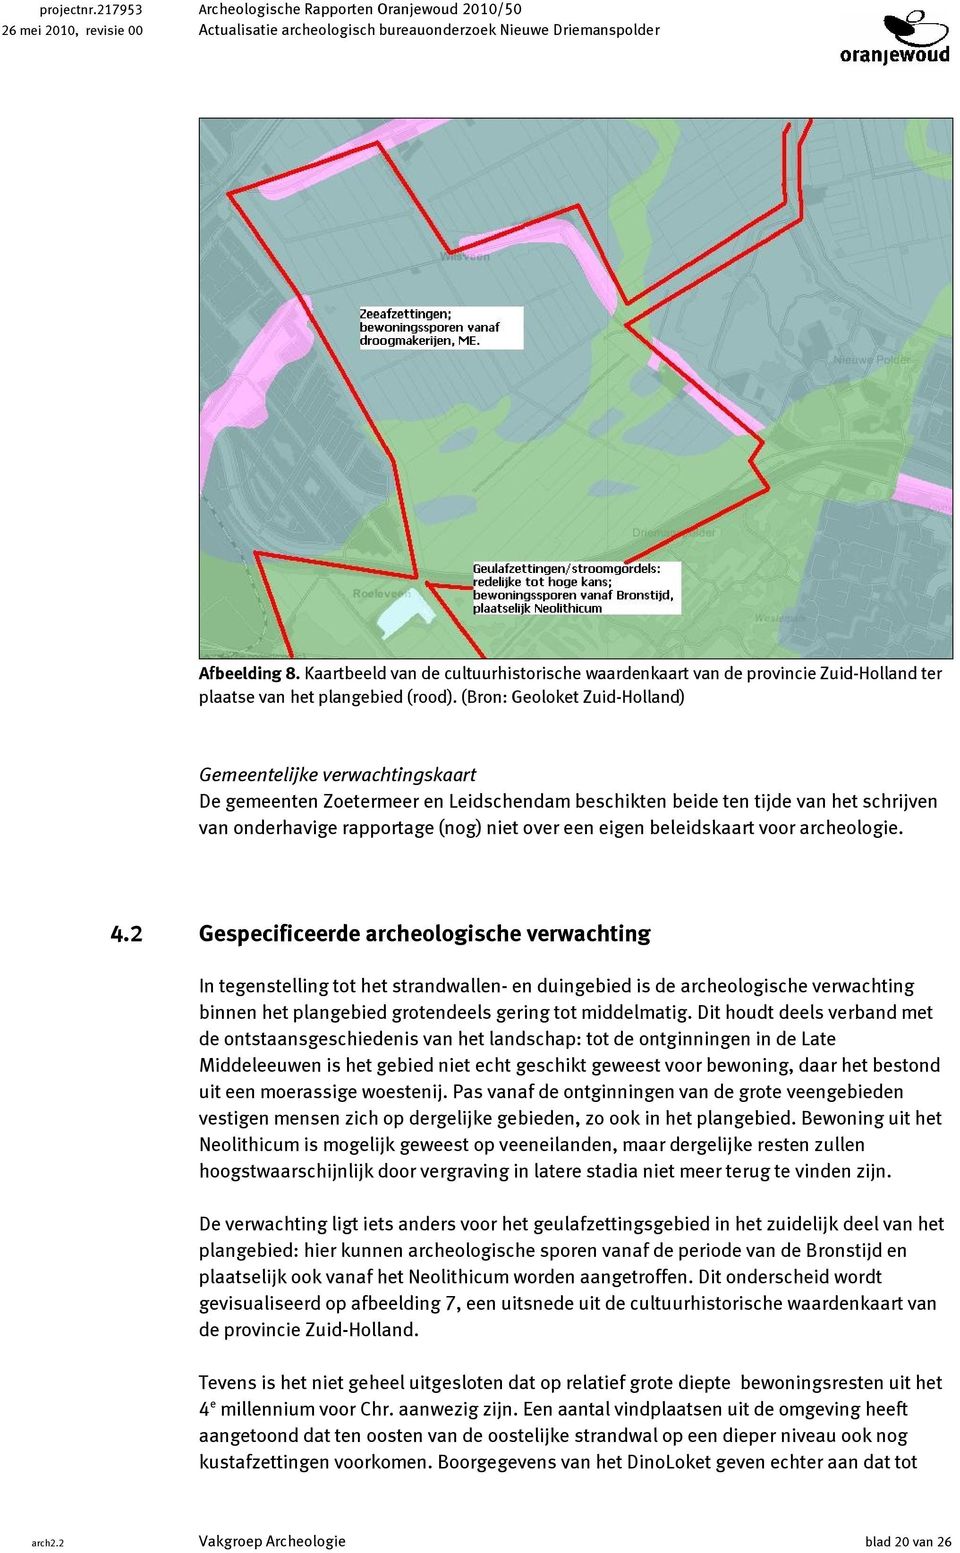 (Bron: Geoloket Zuid-Holland) Gemeentelijke verwachtingskaart De gemeenten Zoetermeer en Leidschendam beschikten beide ten tijde van het schrijven van onderhavige rapportage (nog) niet over een eigen